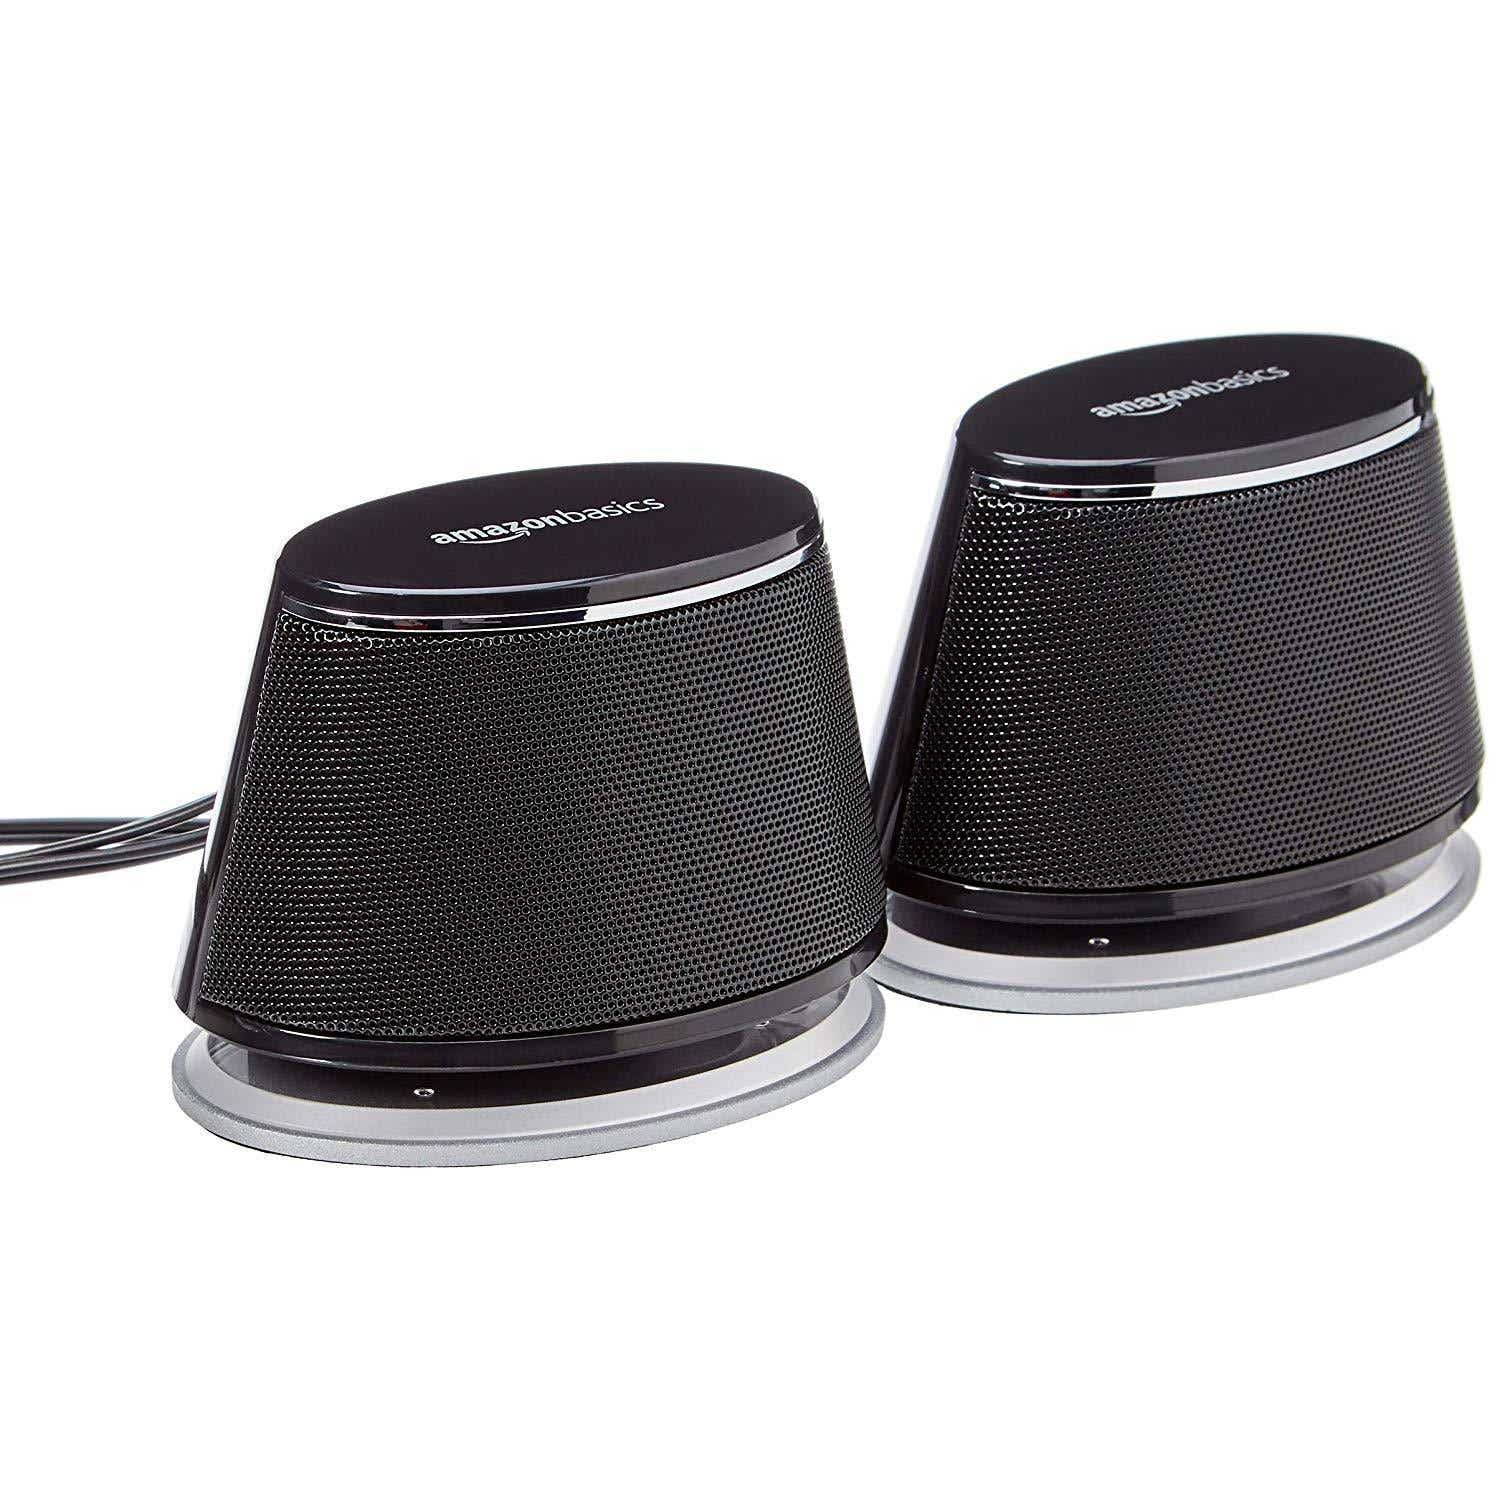 Alto-falantes de computador alimentados por USB da AmazonBasics com som dinâmico - a melhor opção barata